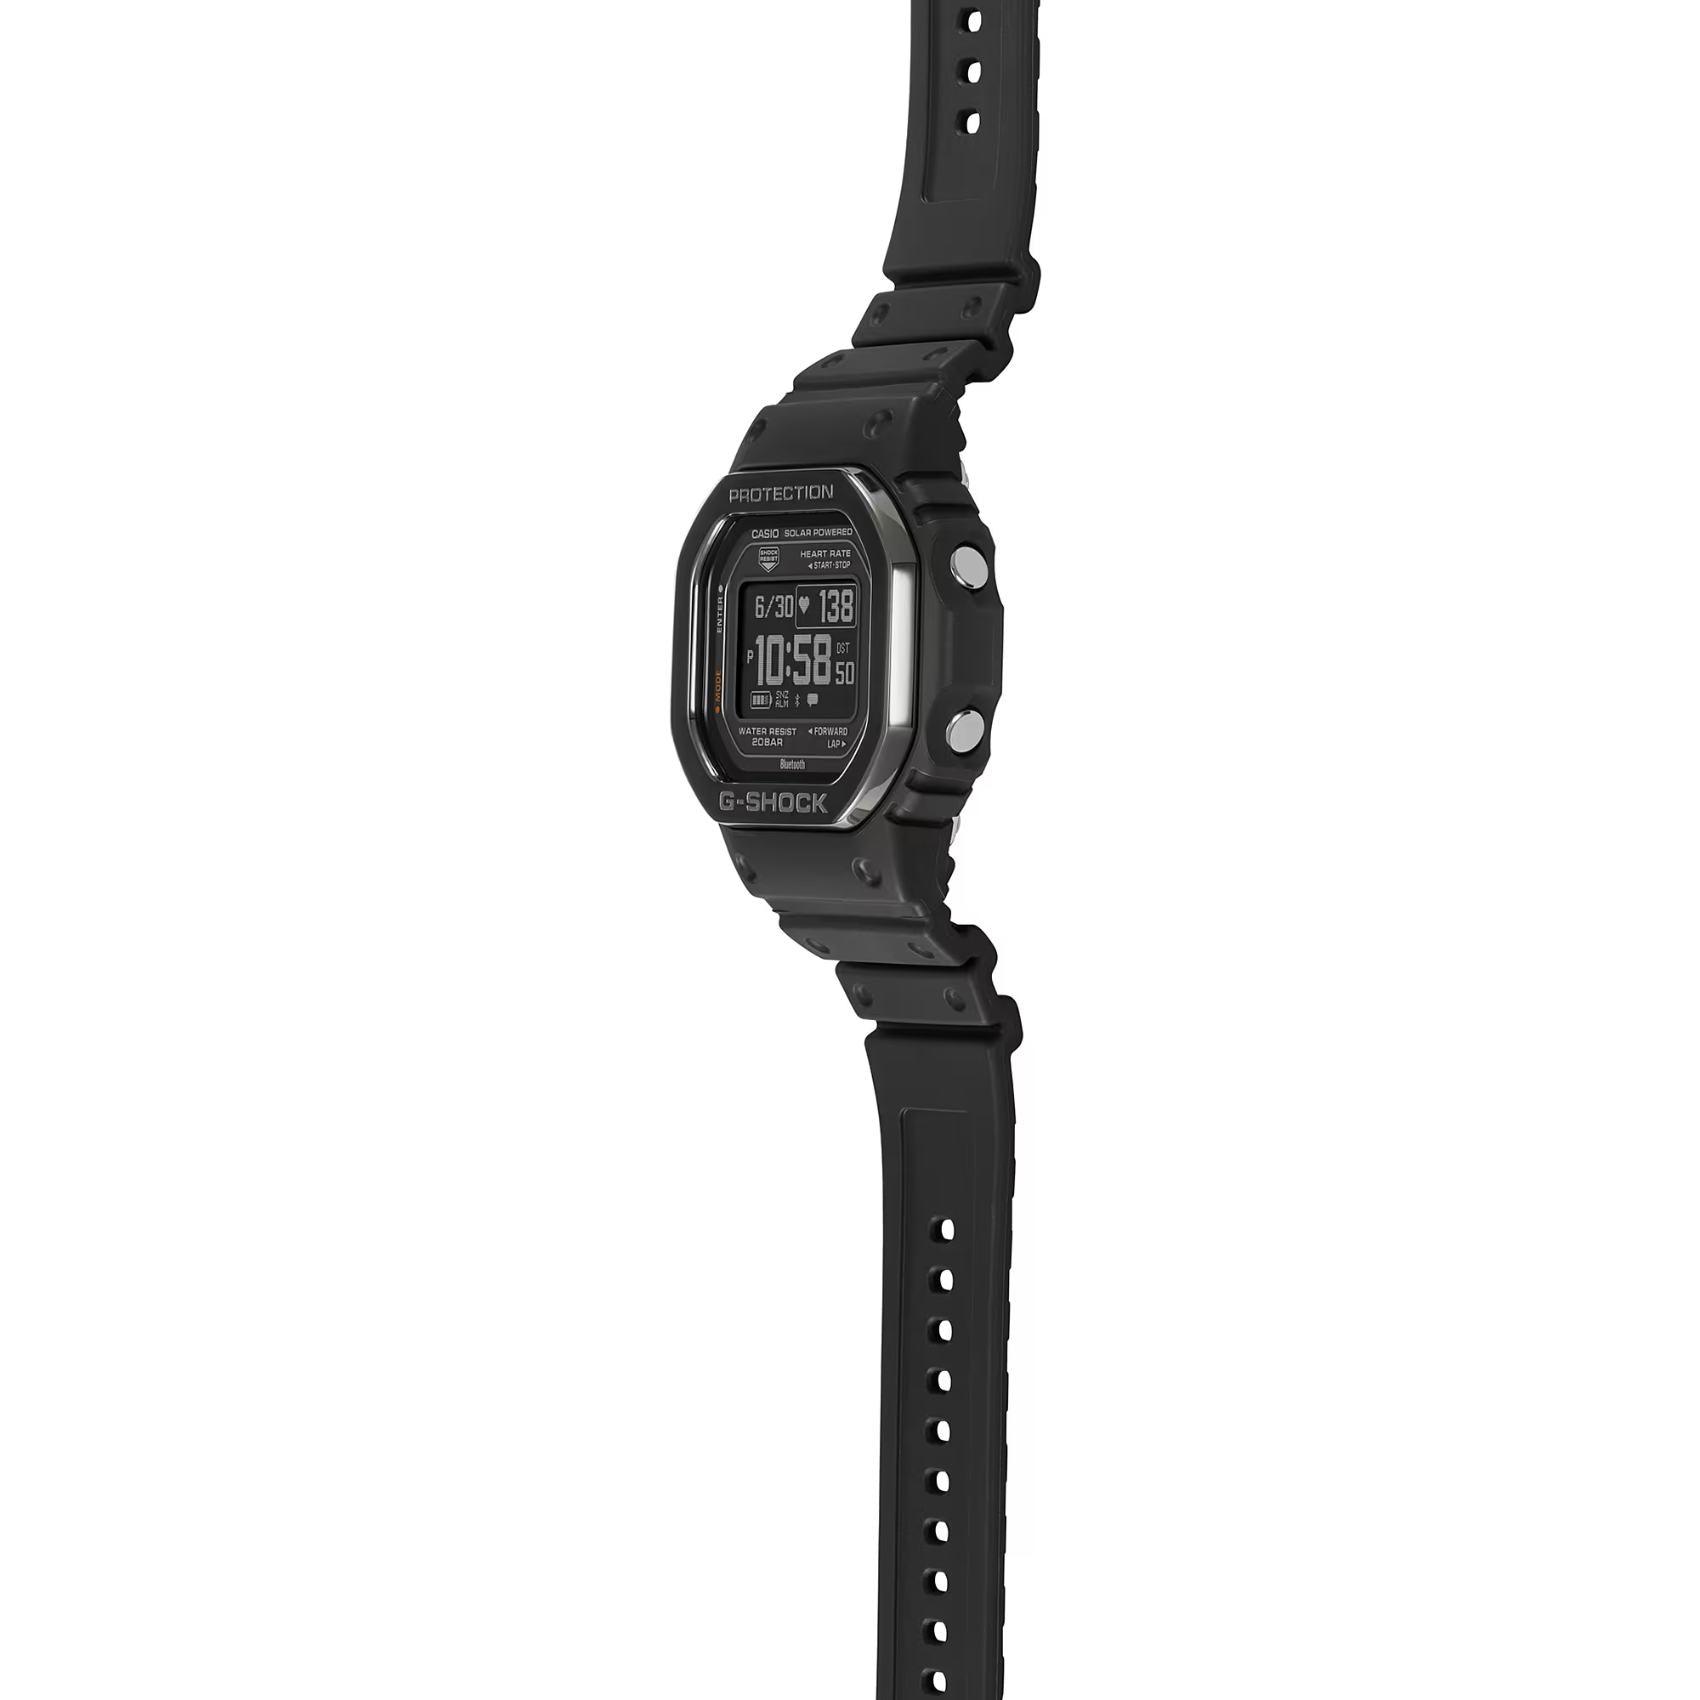 Προπονητικό ρολόι smartwatch G-Squad Casio G-Shock DW-H5600MB-1ER Solar με μαύρο καουτσούκ λουράκι και μαύρο καντράν διαμέτρου 44,5mm σε τετράγωνο σχημα.